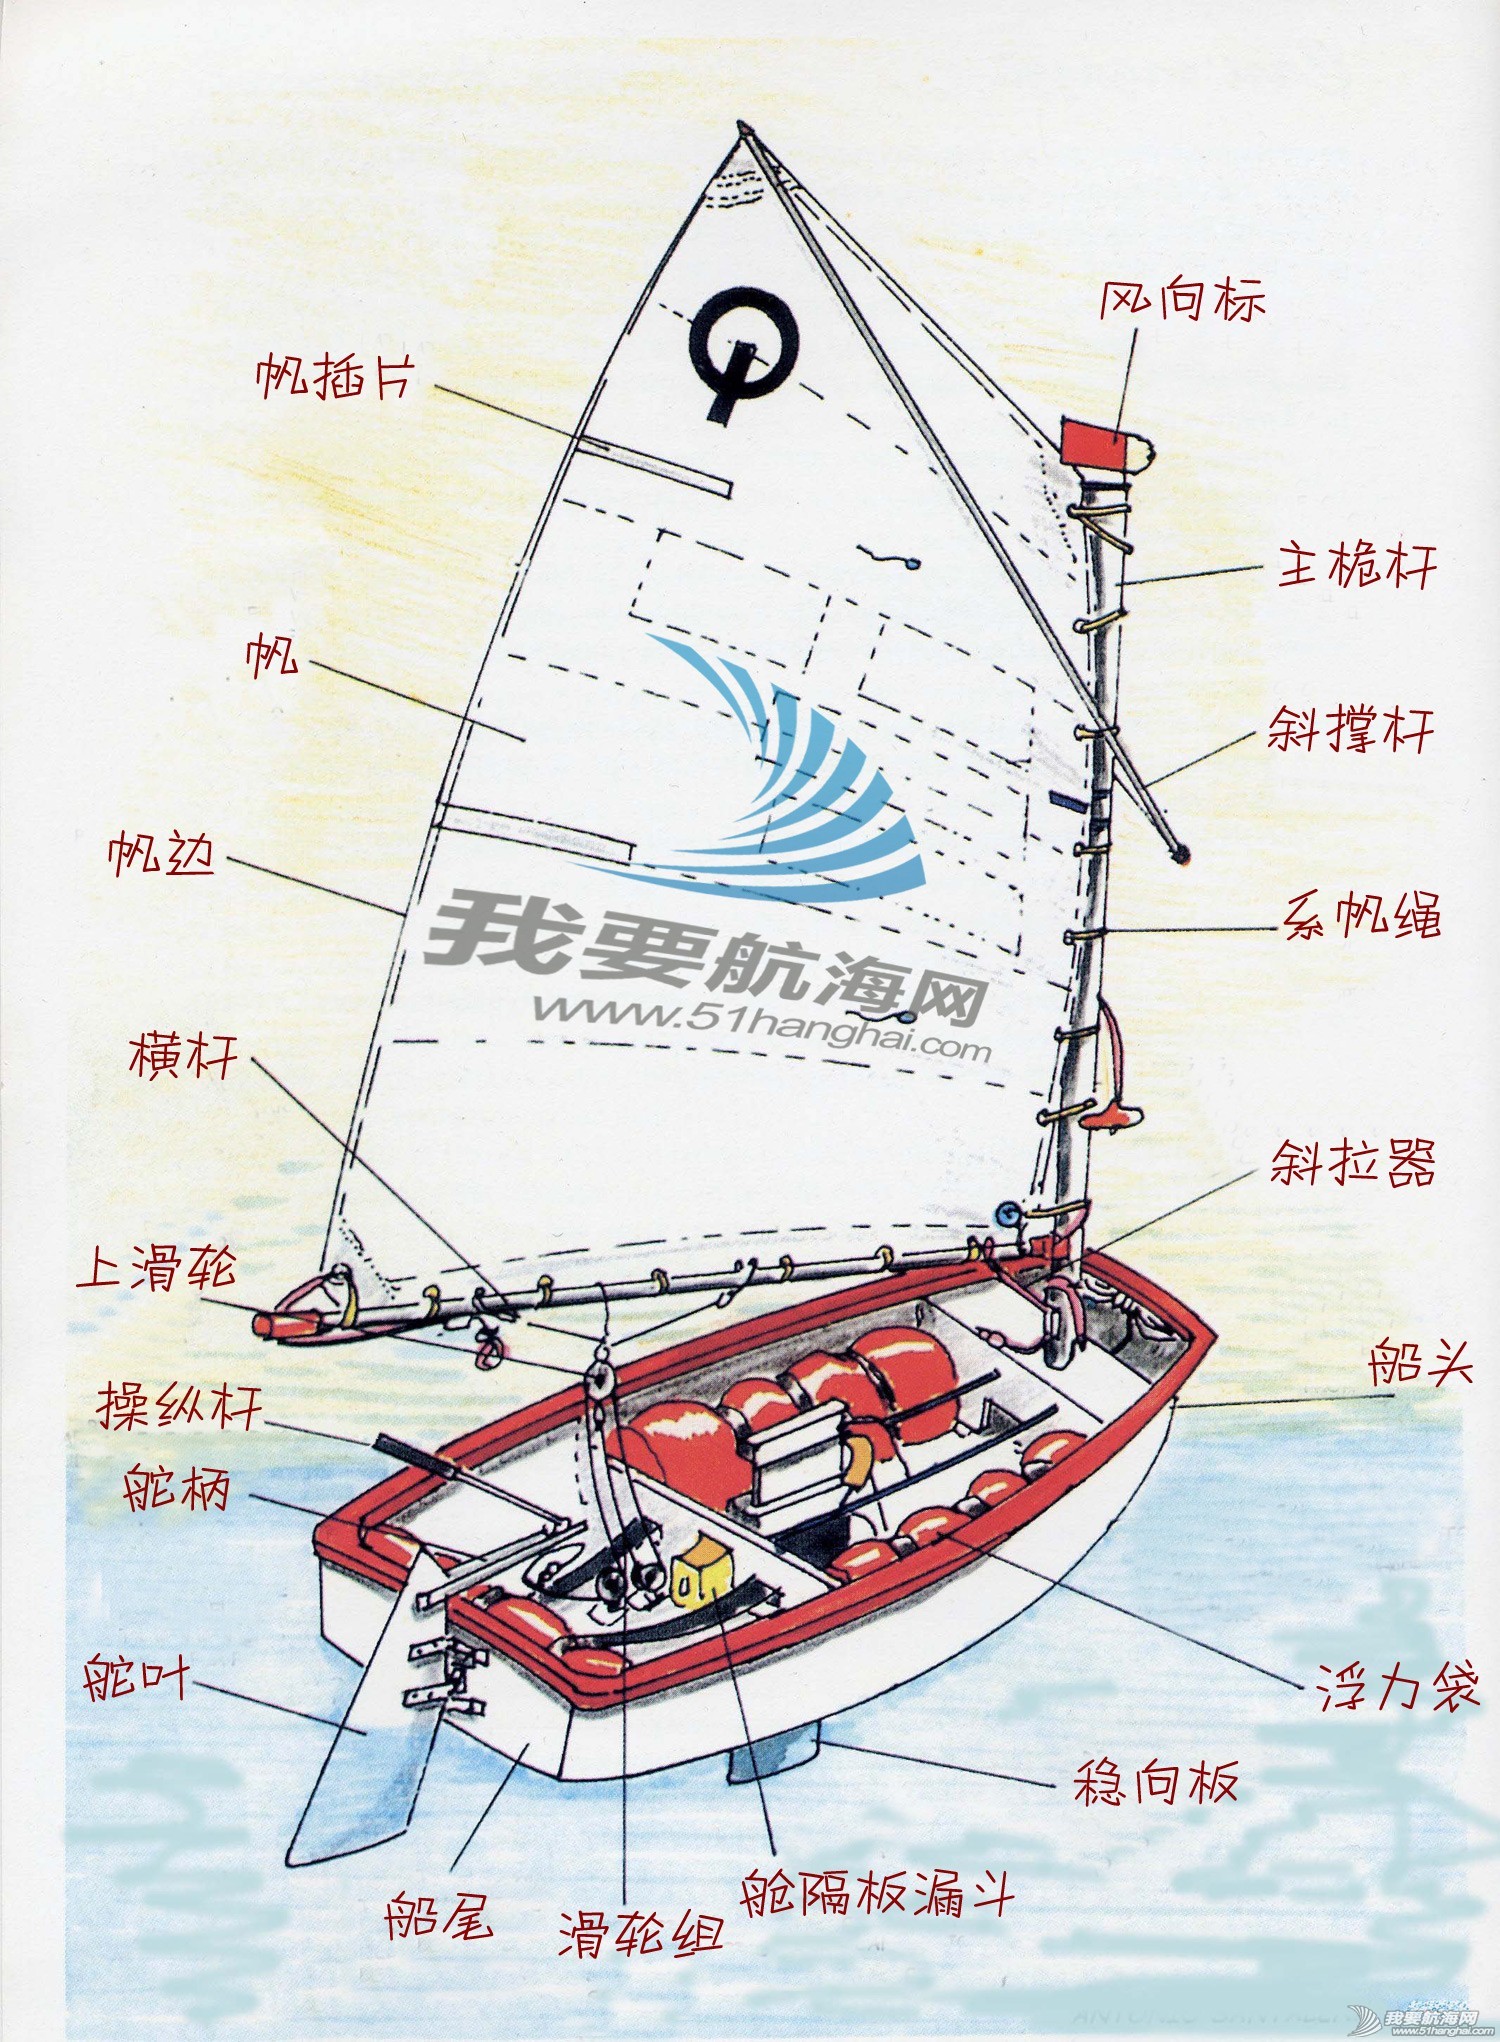 中国杯青少年帆船赛首次在深圳西部海域举行 110名小水手激战深圳湾_深圳新闻网